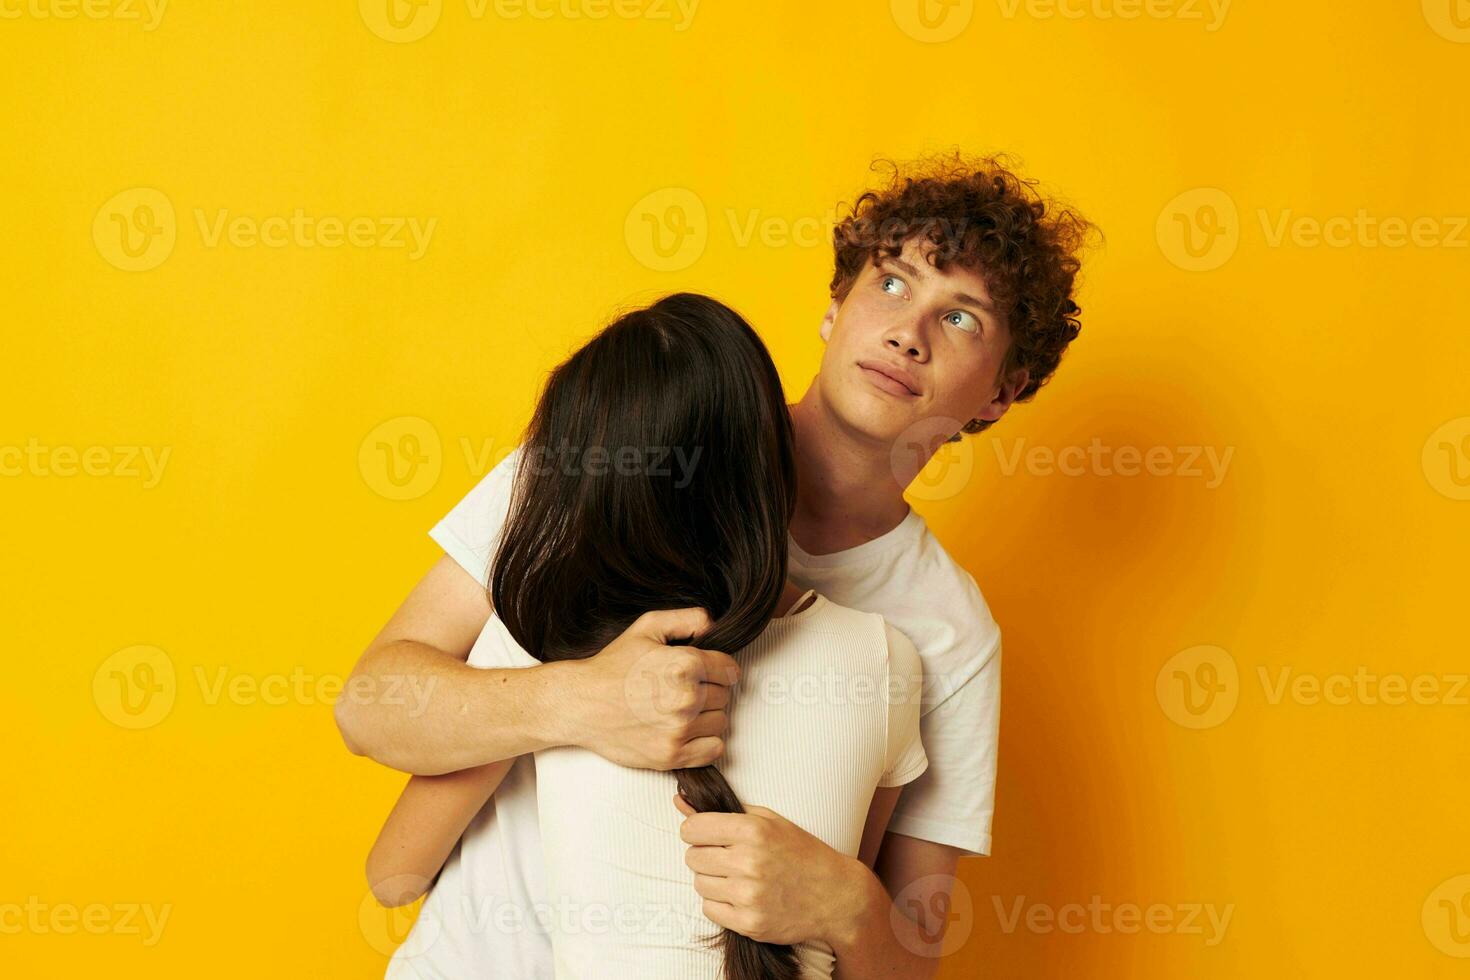 porträtt av en man och en kvinna kram vänskap relation roligt gul bakgrund oförändrad foto